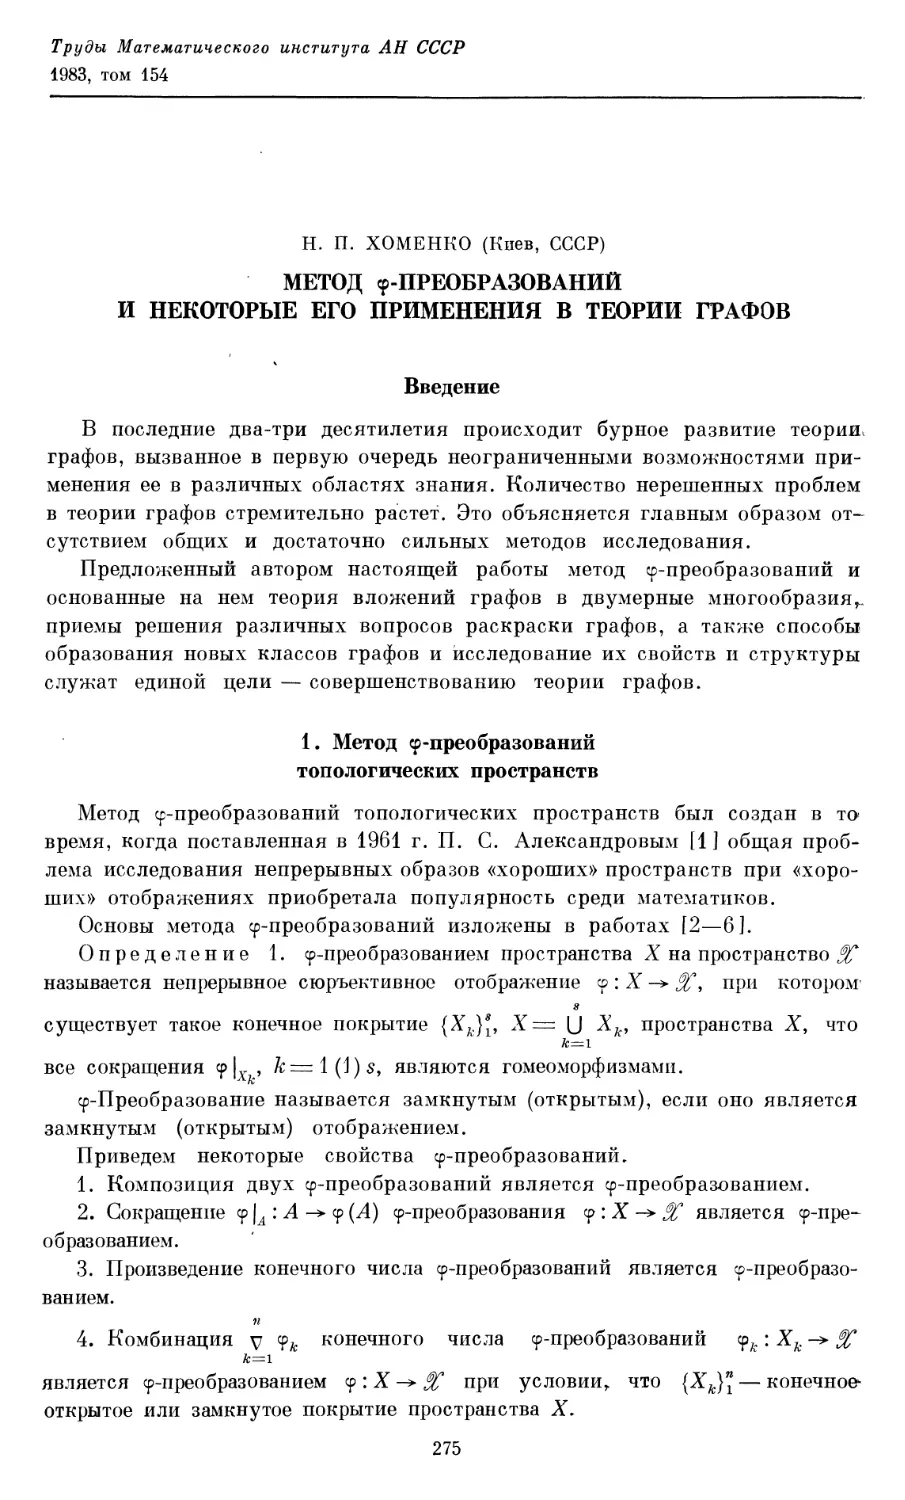 Хоменко Н. П. Метод $\phi$-преобразований и некоторые его применения в теории графов